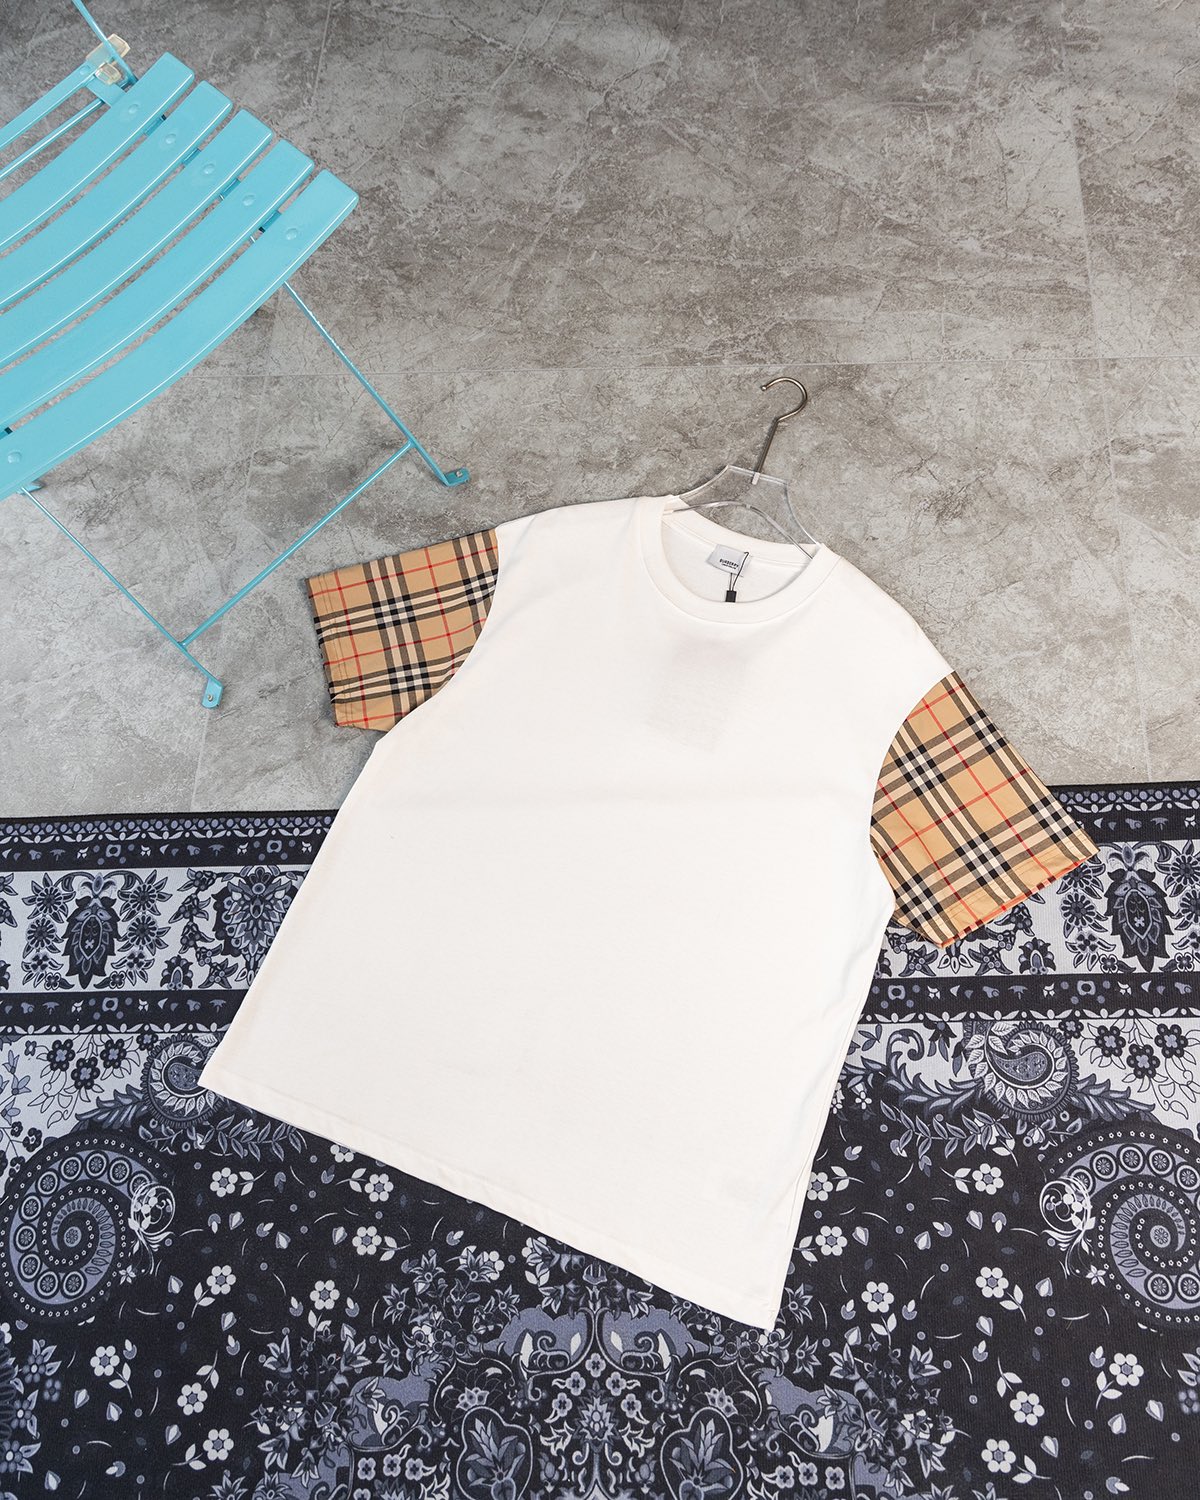 Burberry Clothing T-Shirt Black White Lattice Unisex Short Sleeve